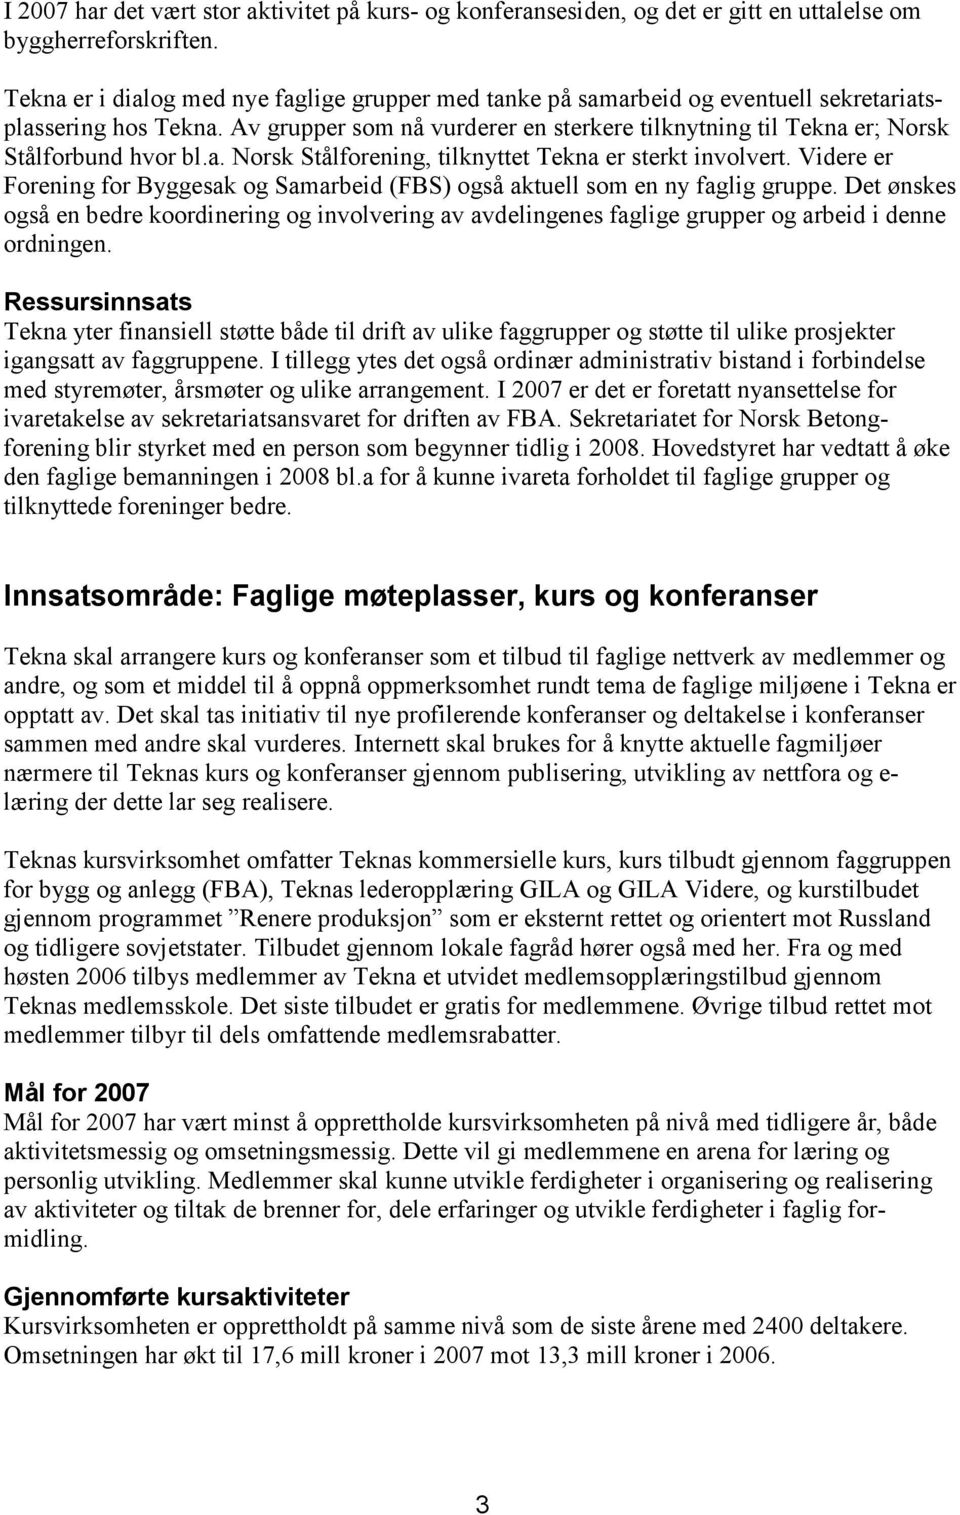 Av grupper som nå vurderer en sterkere tilknytning til Tekna er; Norsk Stålforbund hvor bl.a. Norsk Stålforening, tilknyttet Tekna er sterkt involvert.